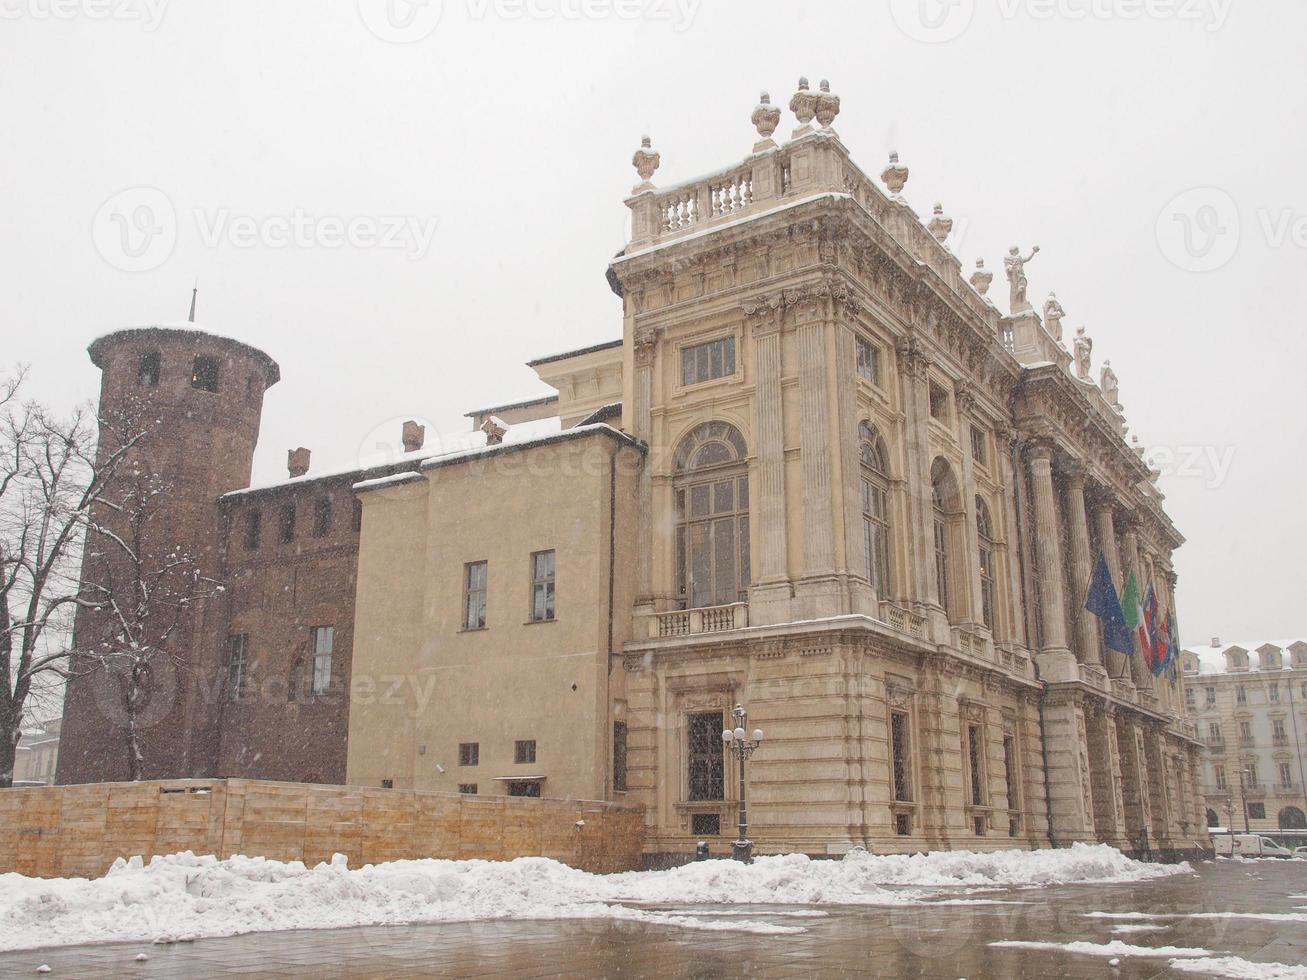 palazzo madama, Turin foto